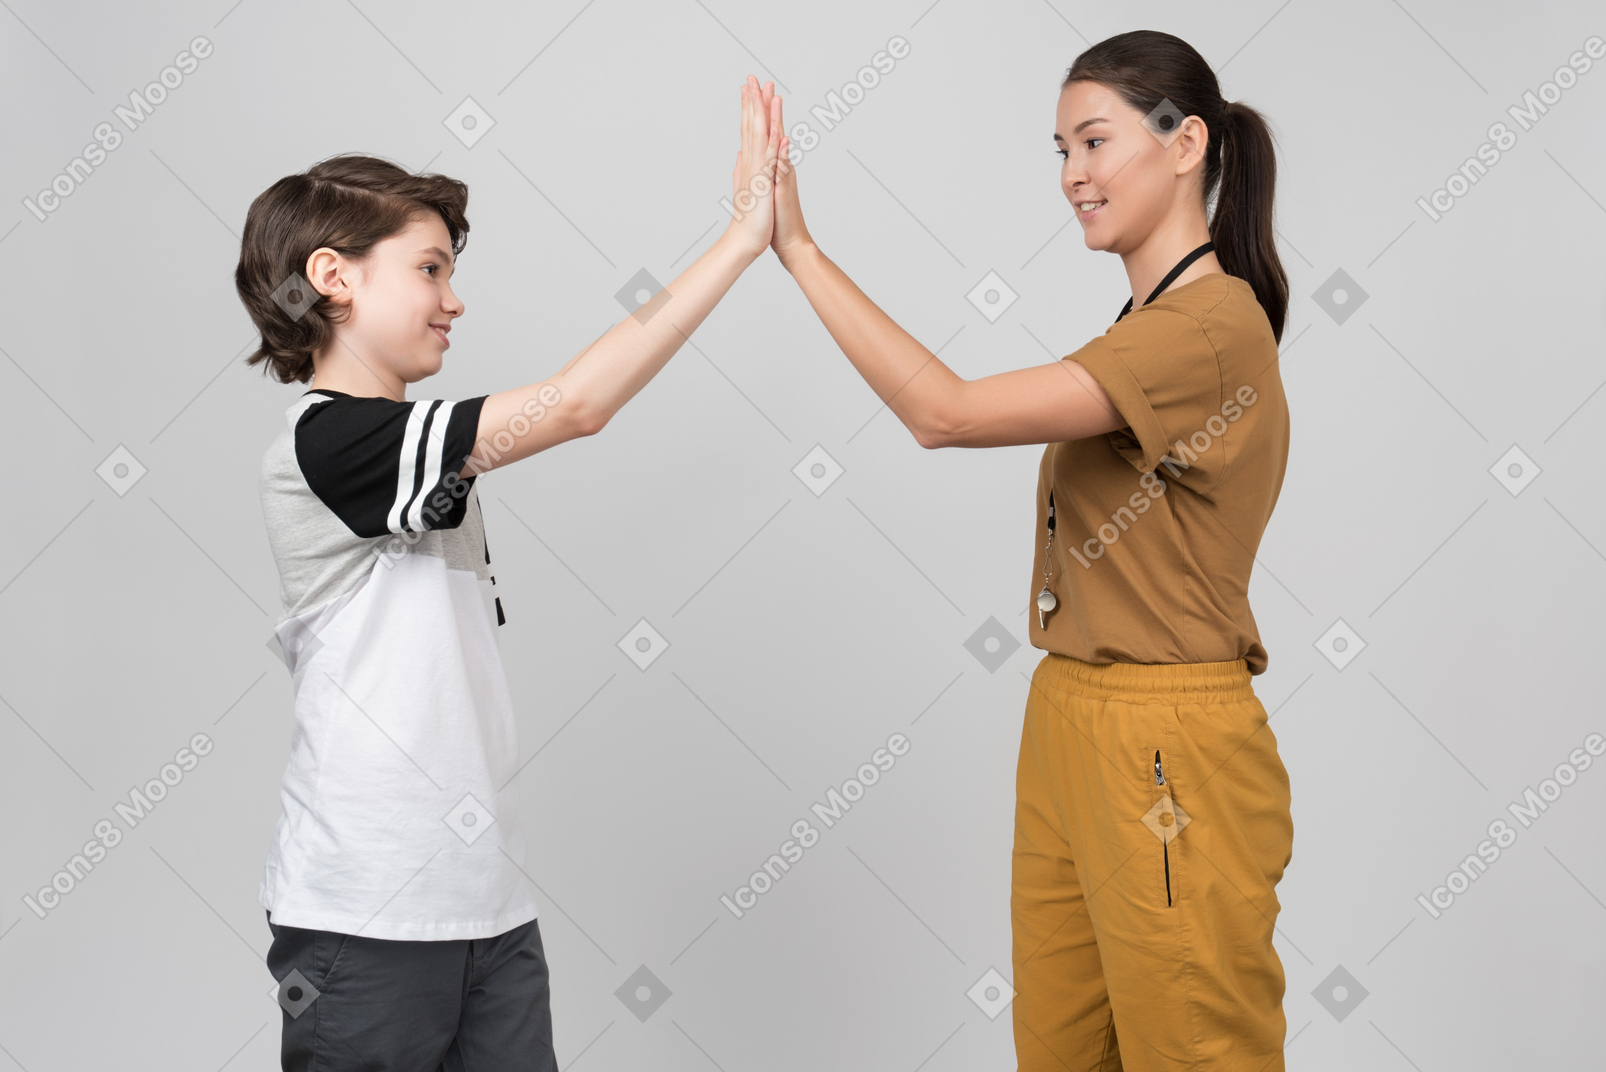 Pe profesor y alumno aplaudiendo las manos